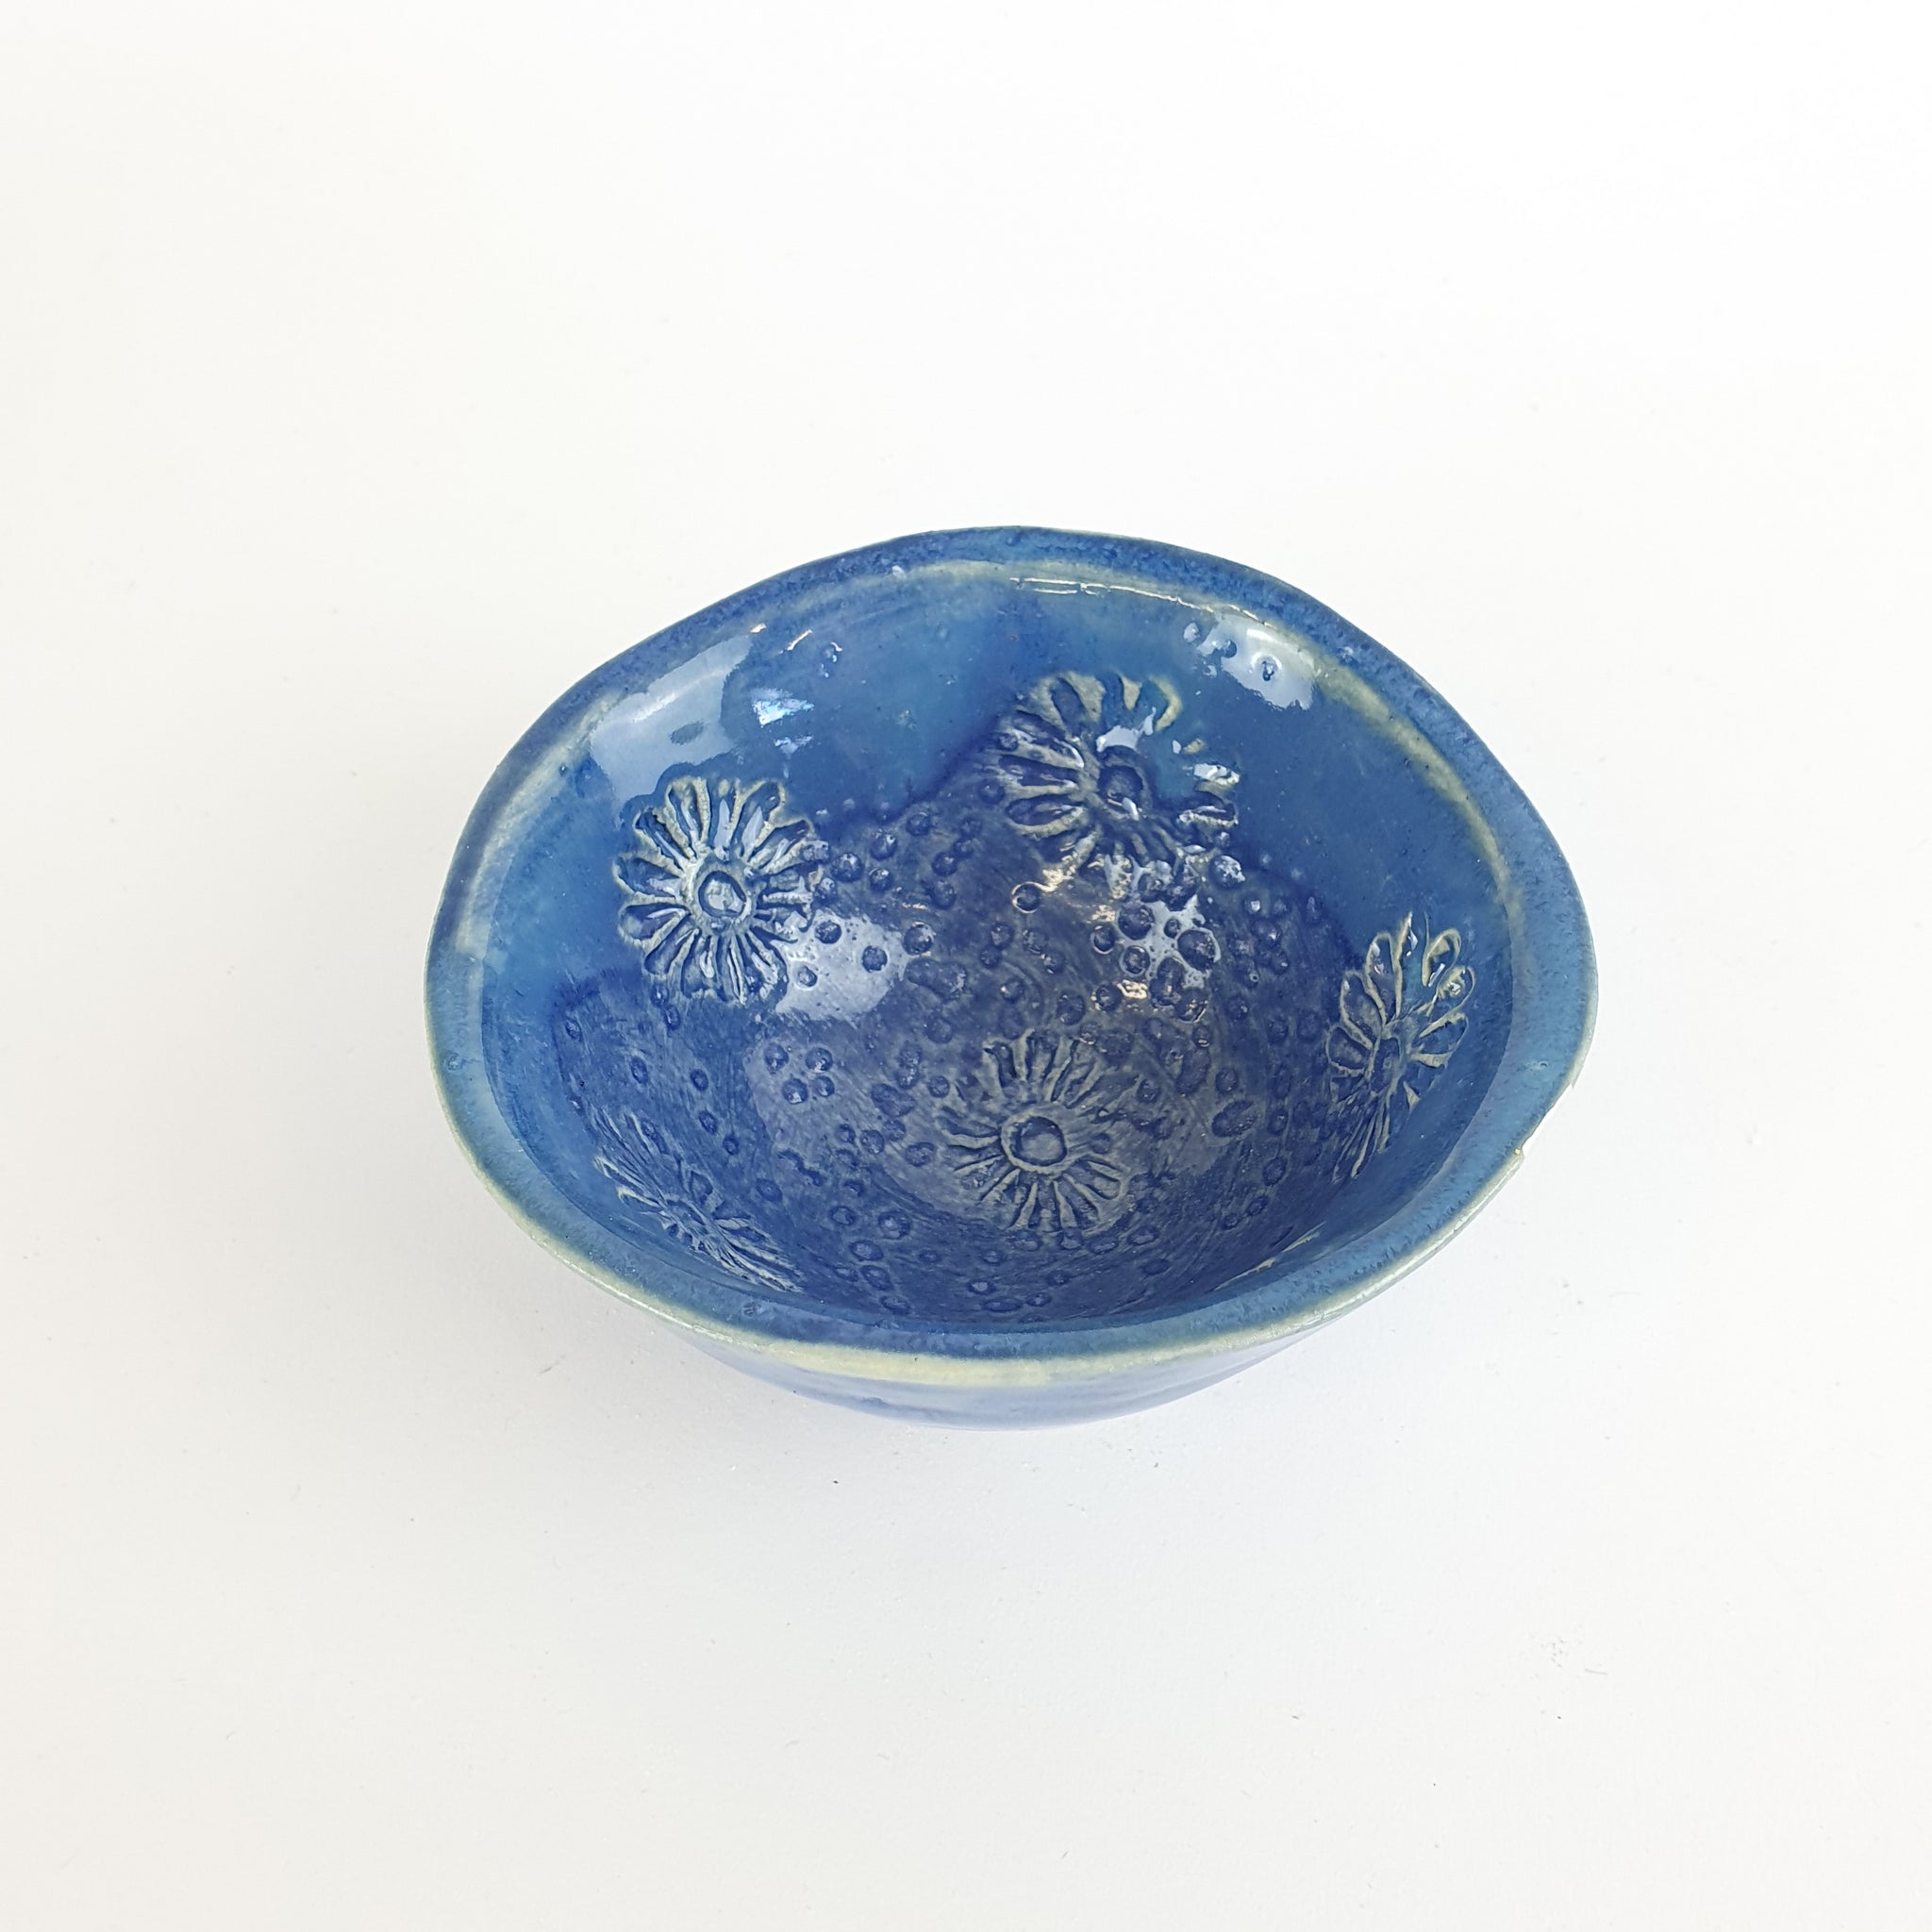 Glazed Bowl I - Medium